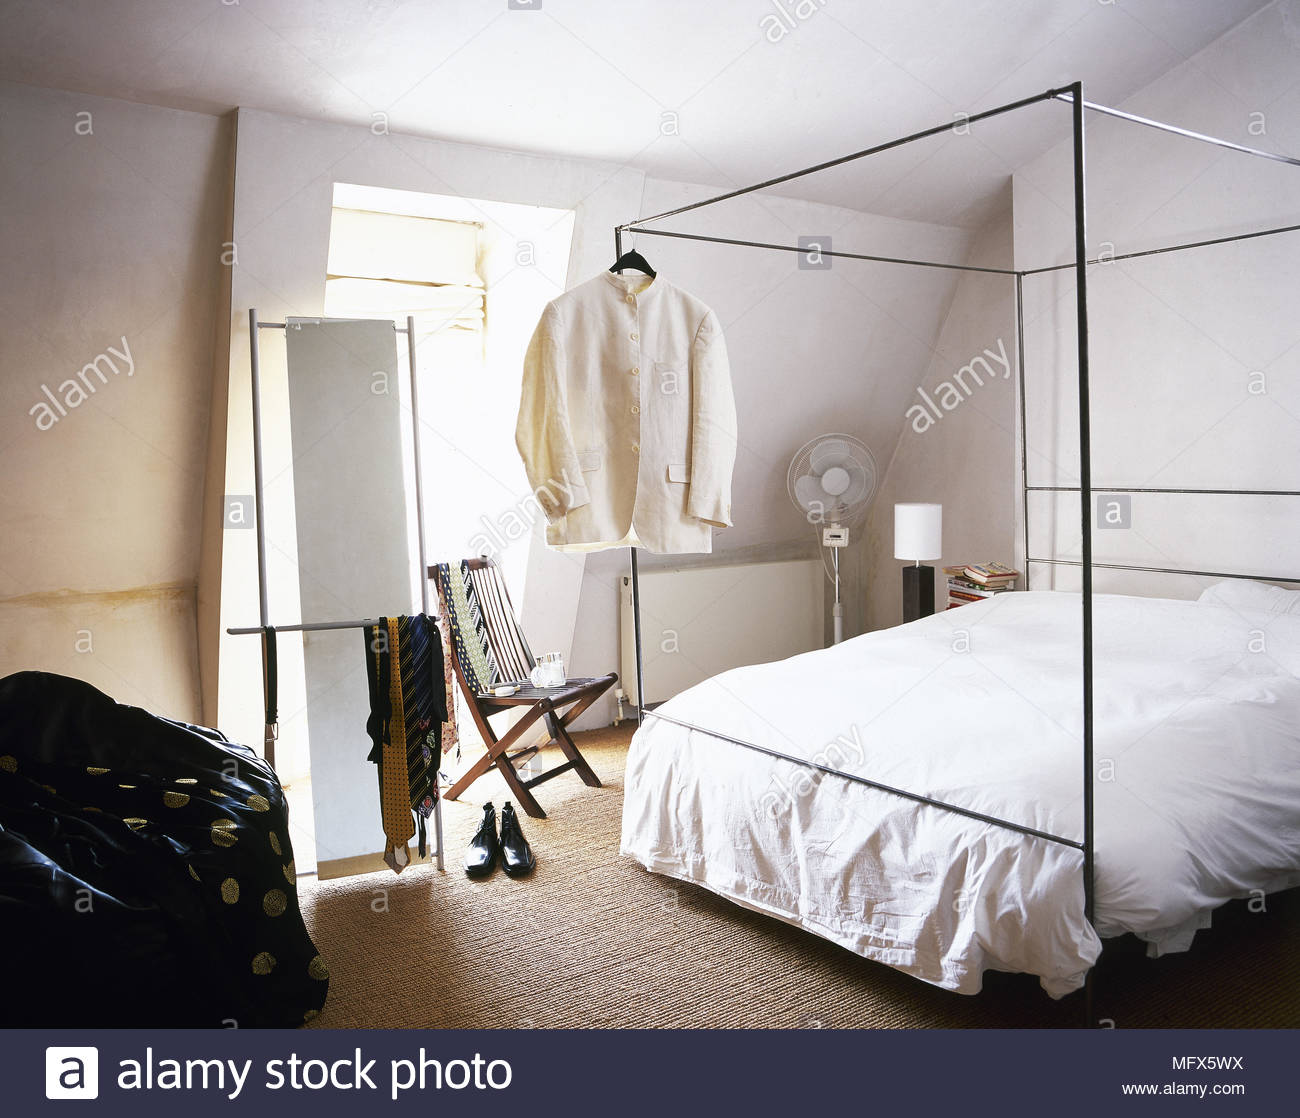 modernes schlafzimmer mit teppichboden dachschrage sonnigen fenster und herrenbekleidung hangen von einem metall himmelbett mfx5wx